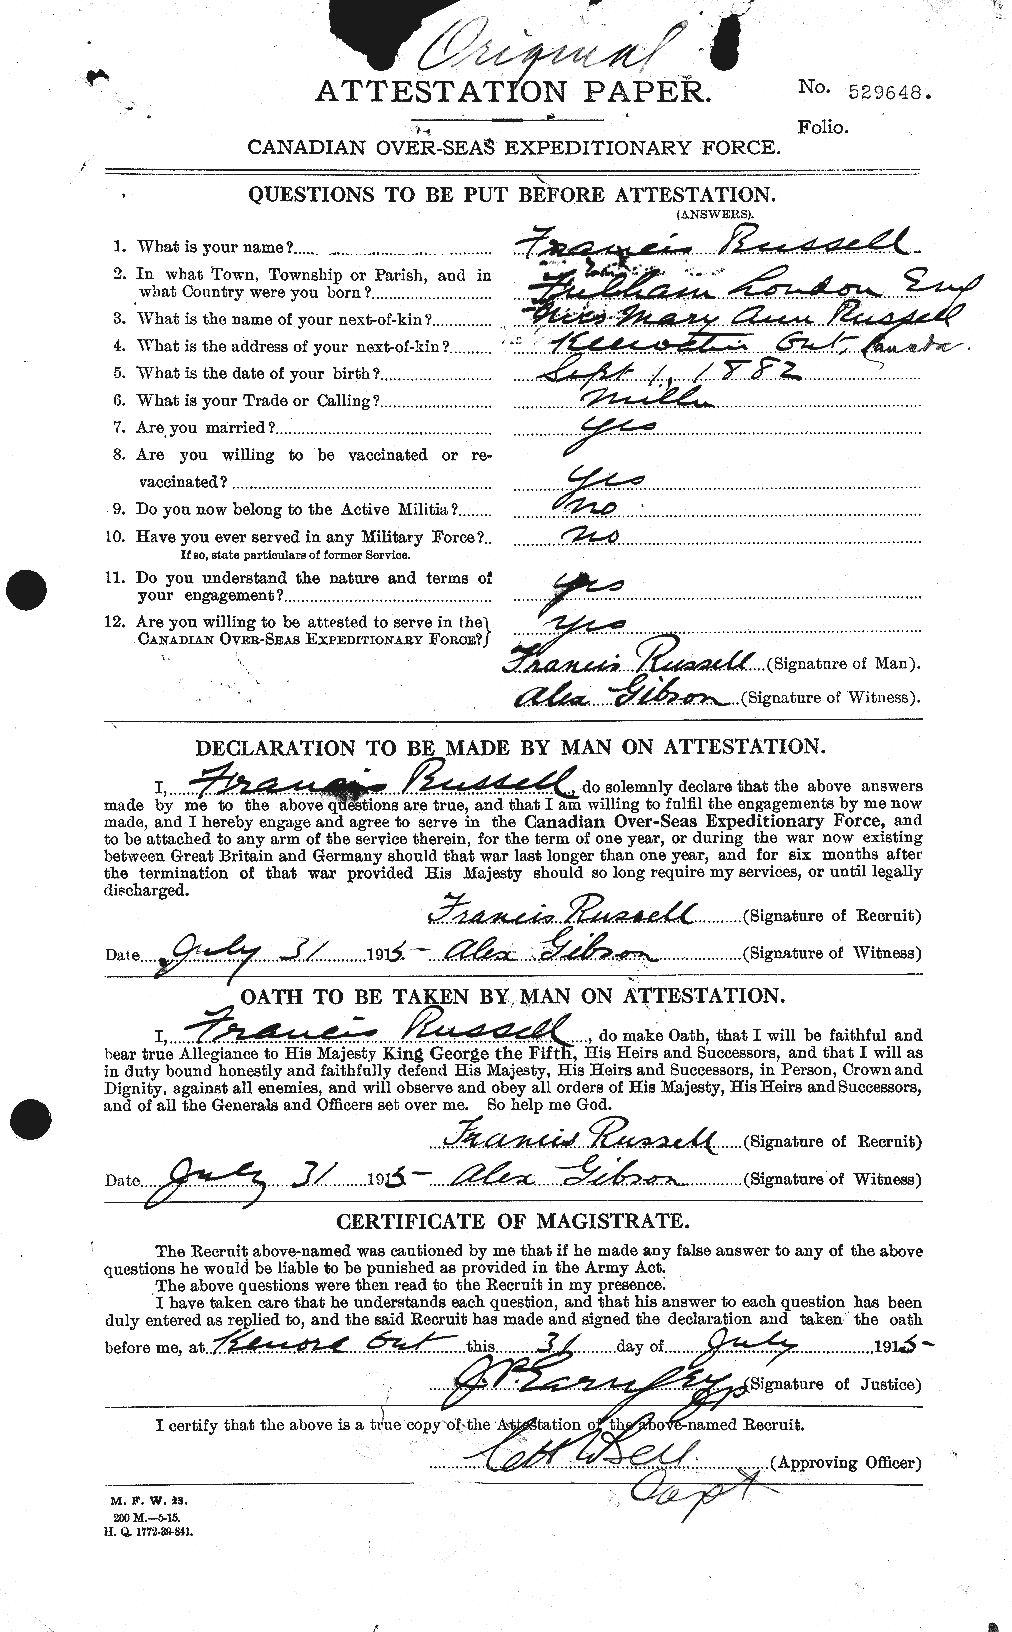 Dossiers du Personnel de la Première Guerre mondiale - CEC 618865a